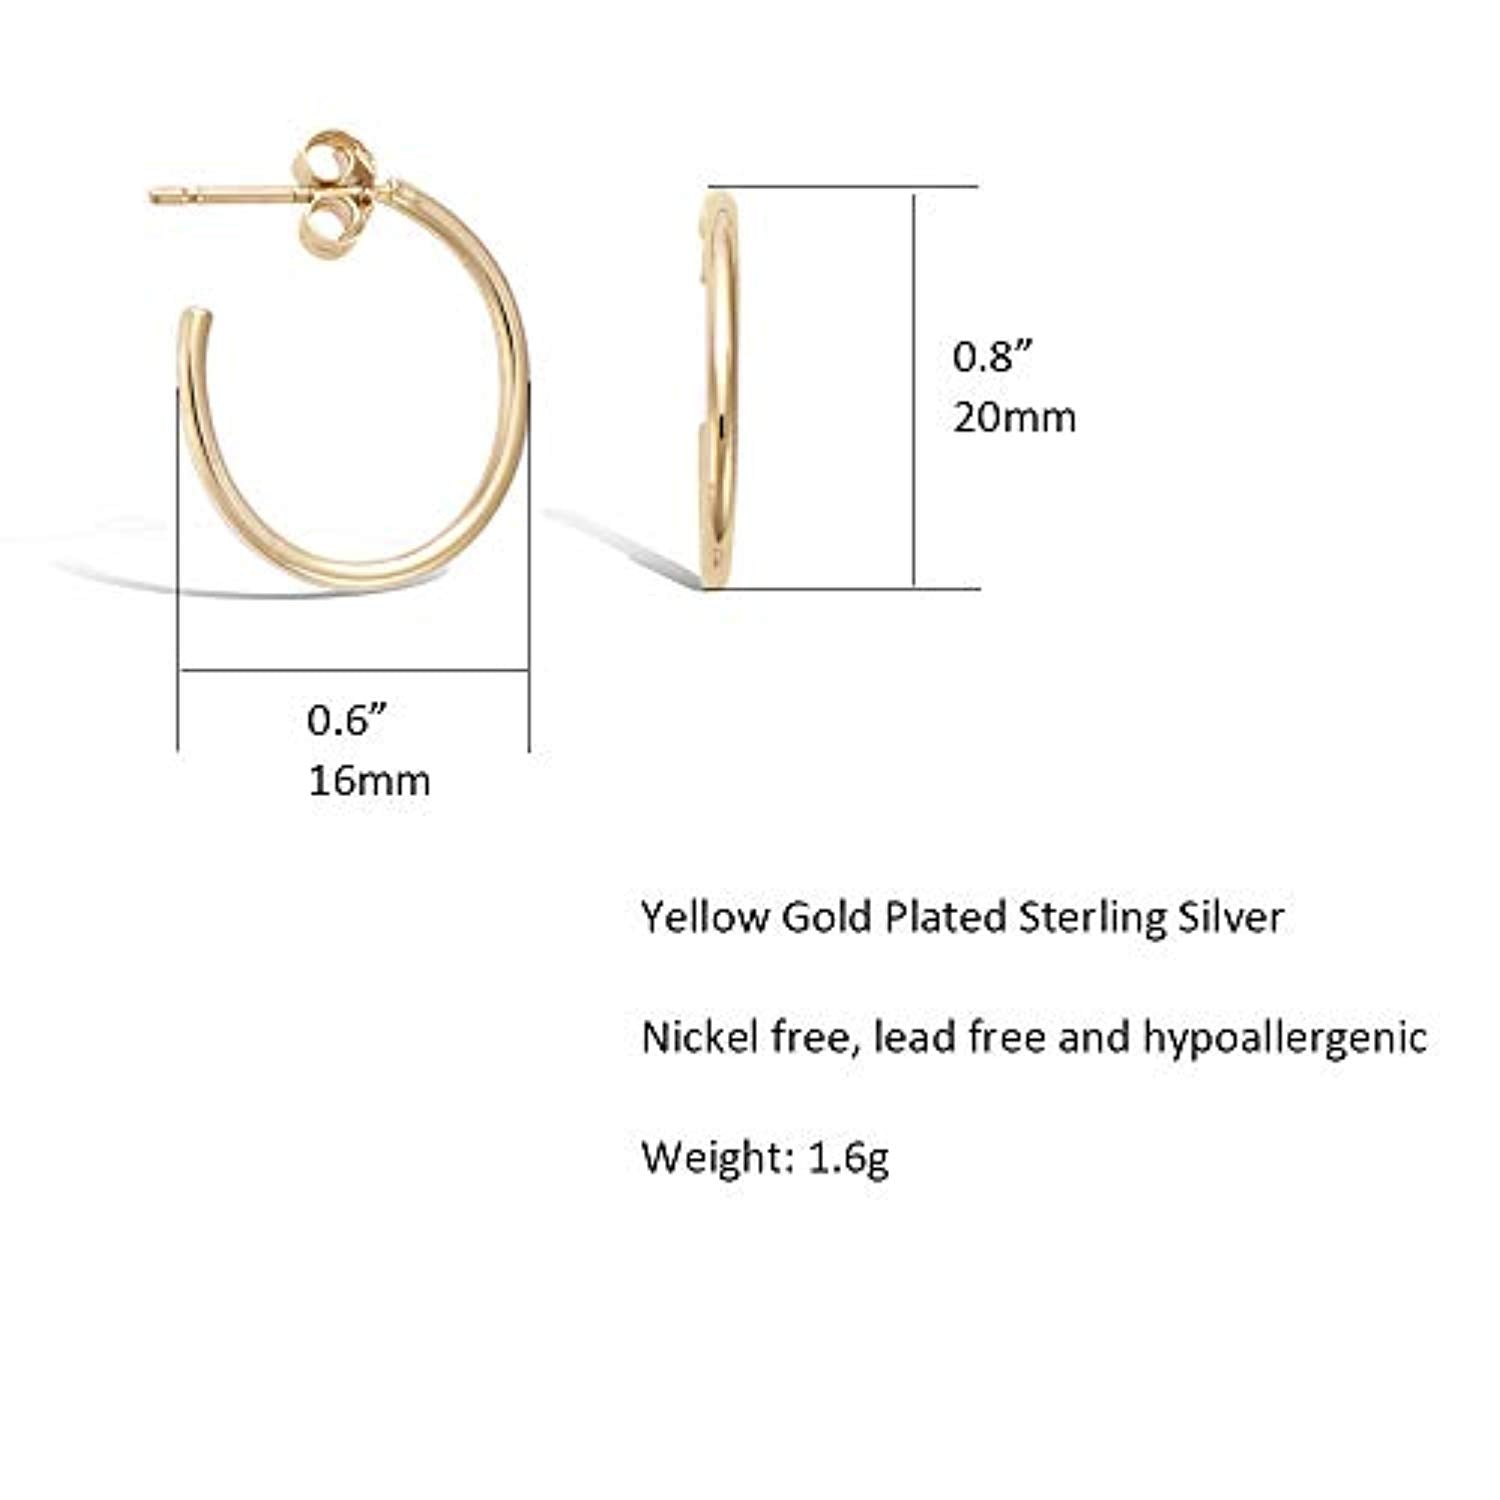 Small Hoop Earrings Hypoallergenic 14K Gold Plated Sterling Silver Post Samll Open Hoops Earrings for Women Girls